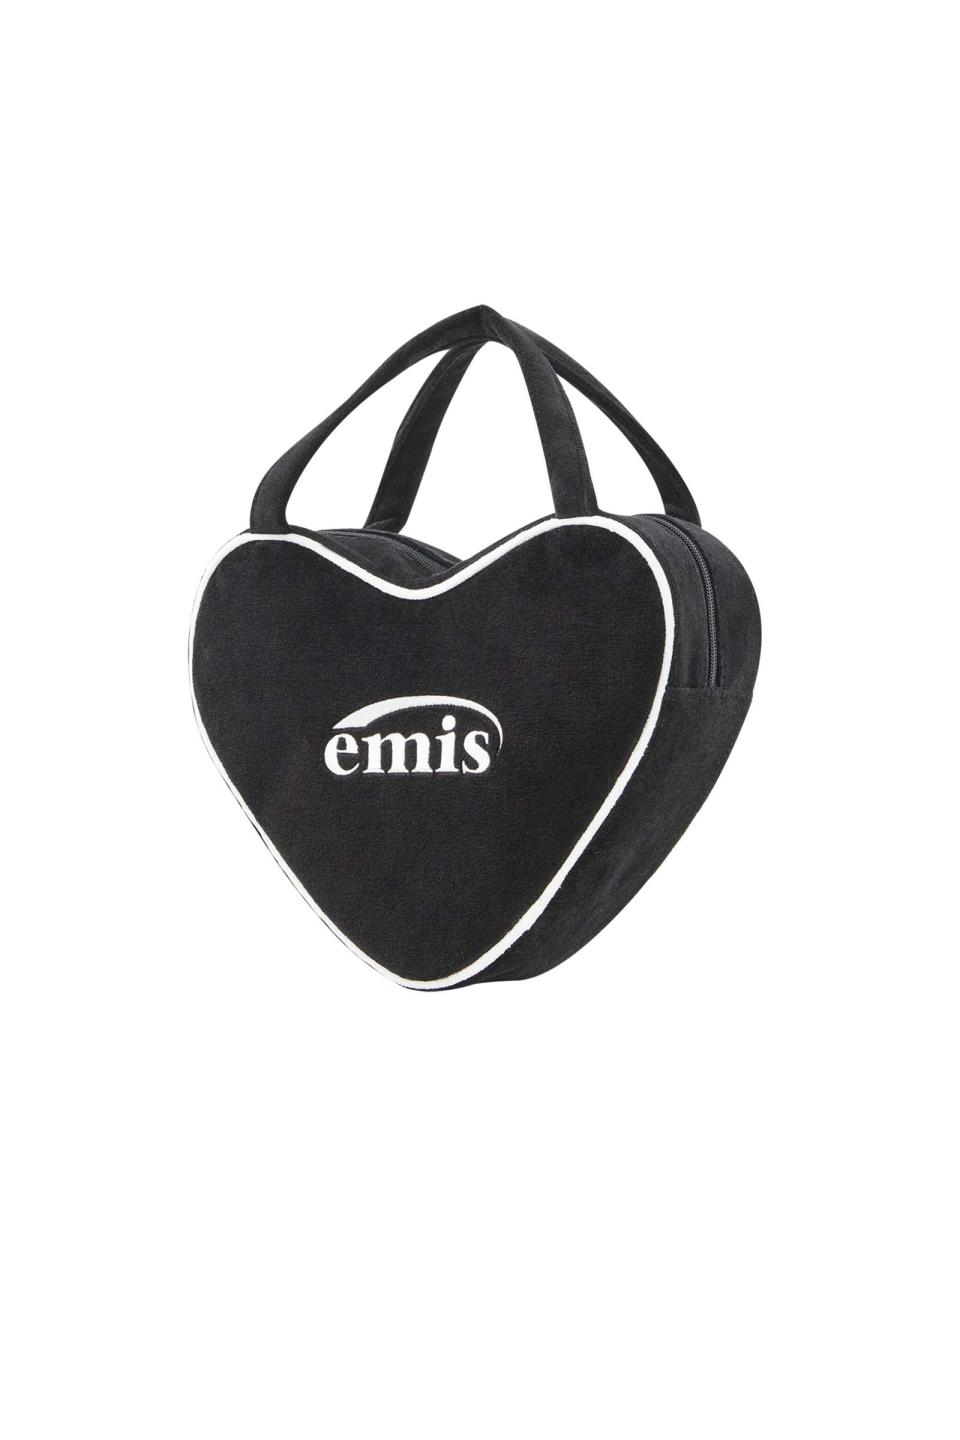 emis的小包款可愛又新潮。（翻攝自官網）